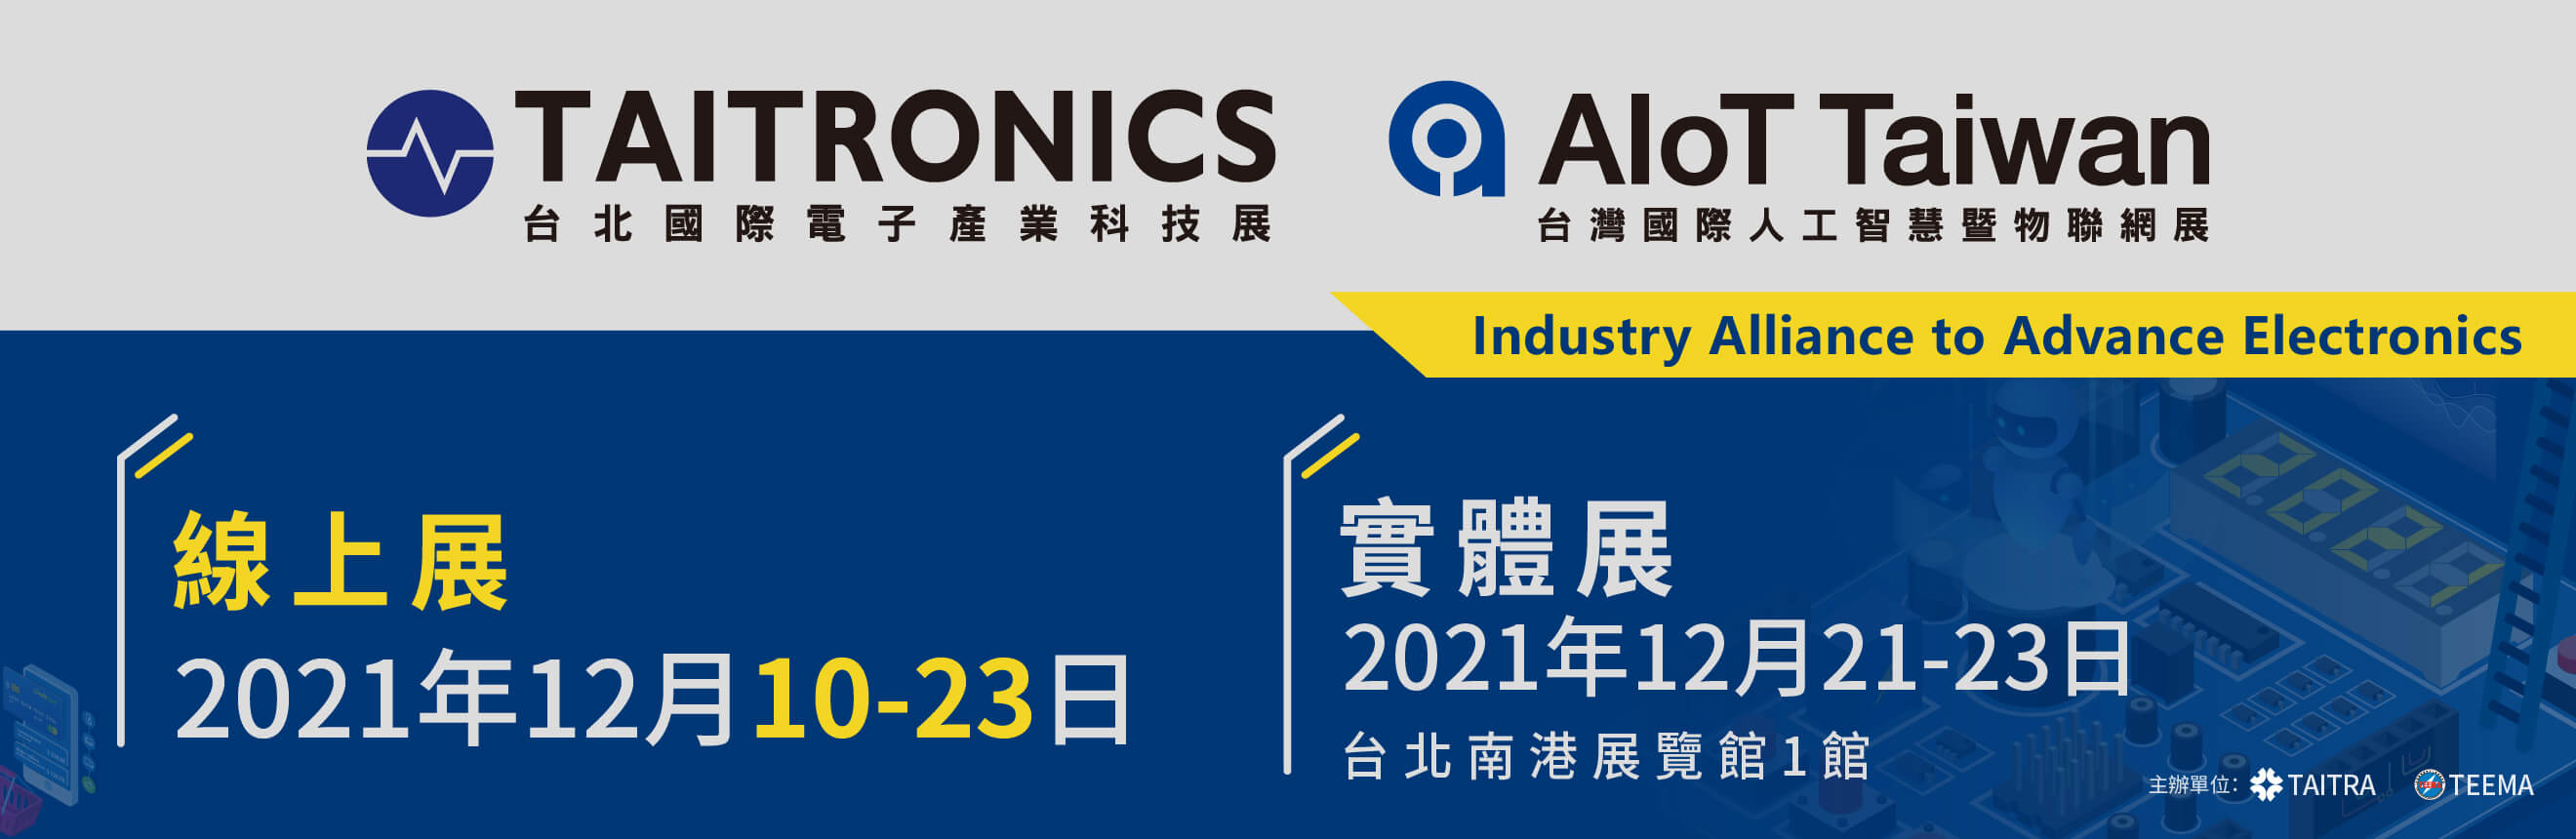 2021年台北國際電子產業科技展(TAITRONICS) 及台灣國際人工智慧暨物聯網展(AIoT Taiwan) 